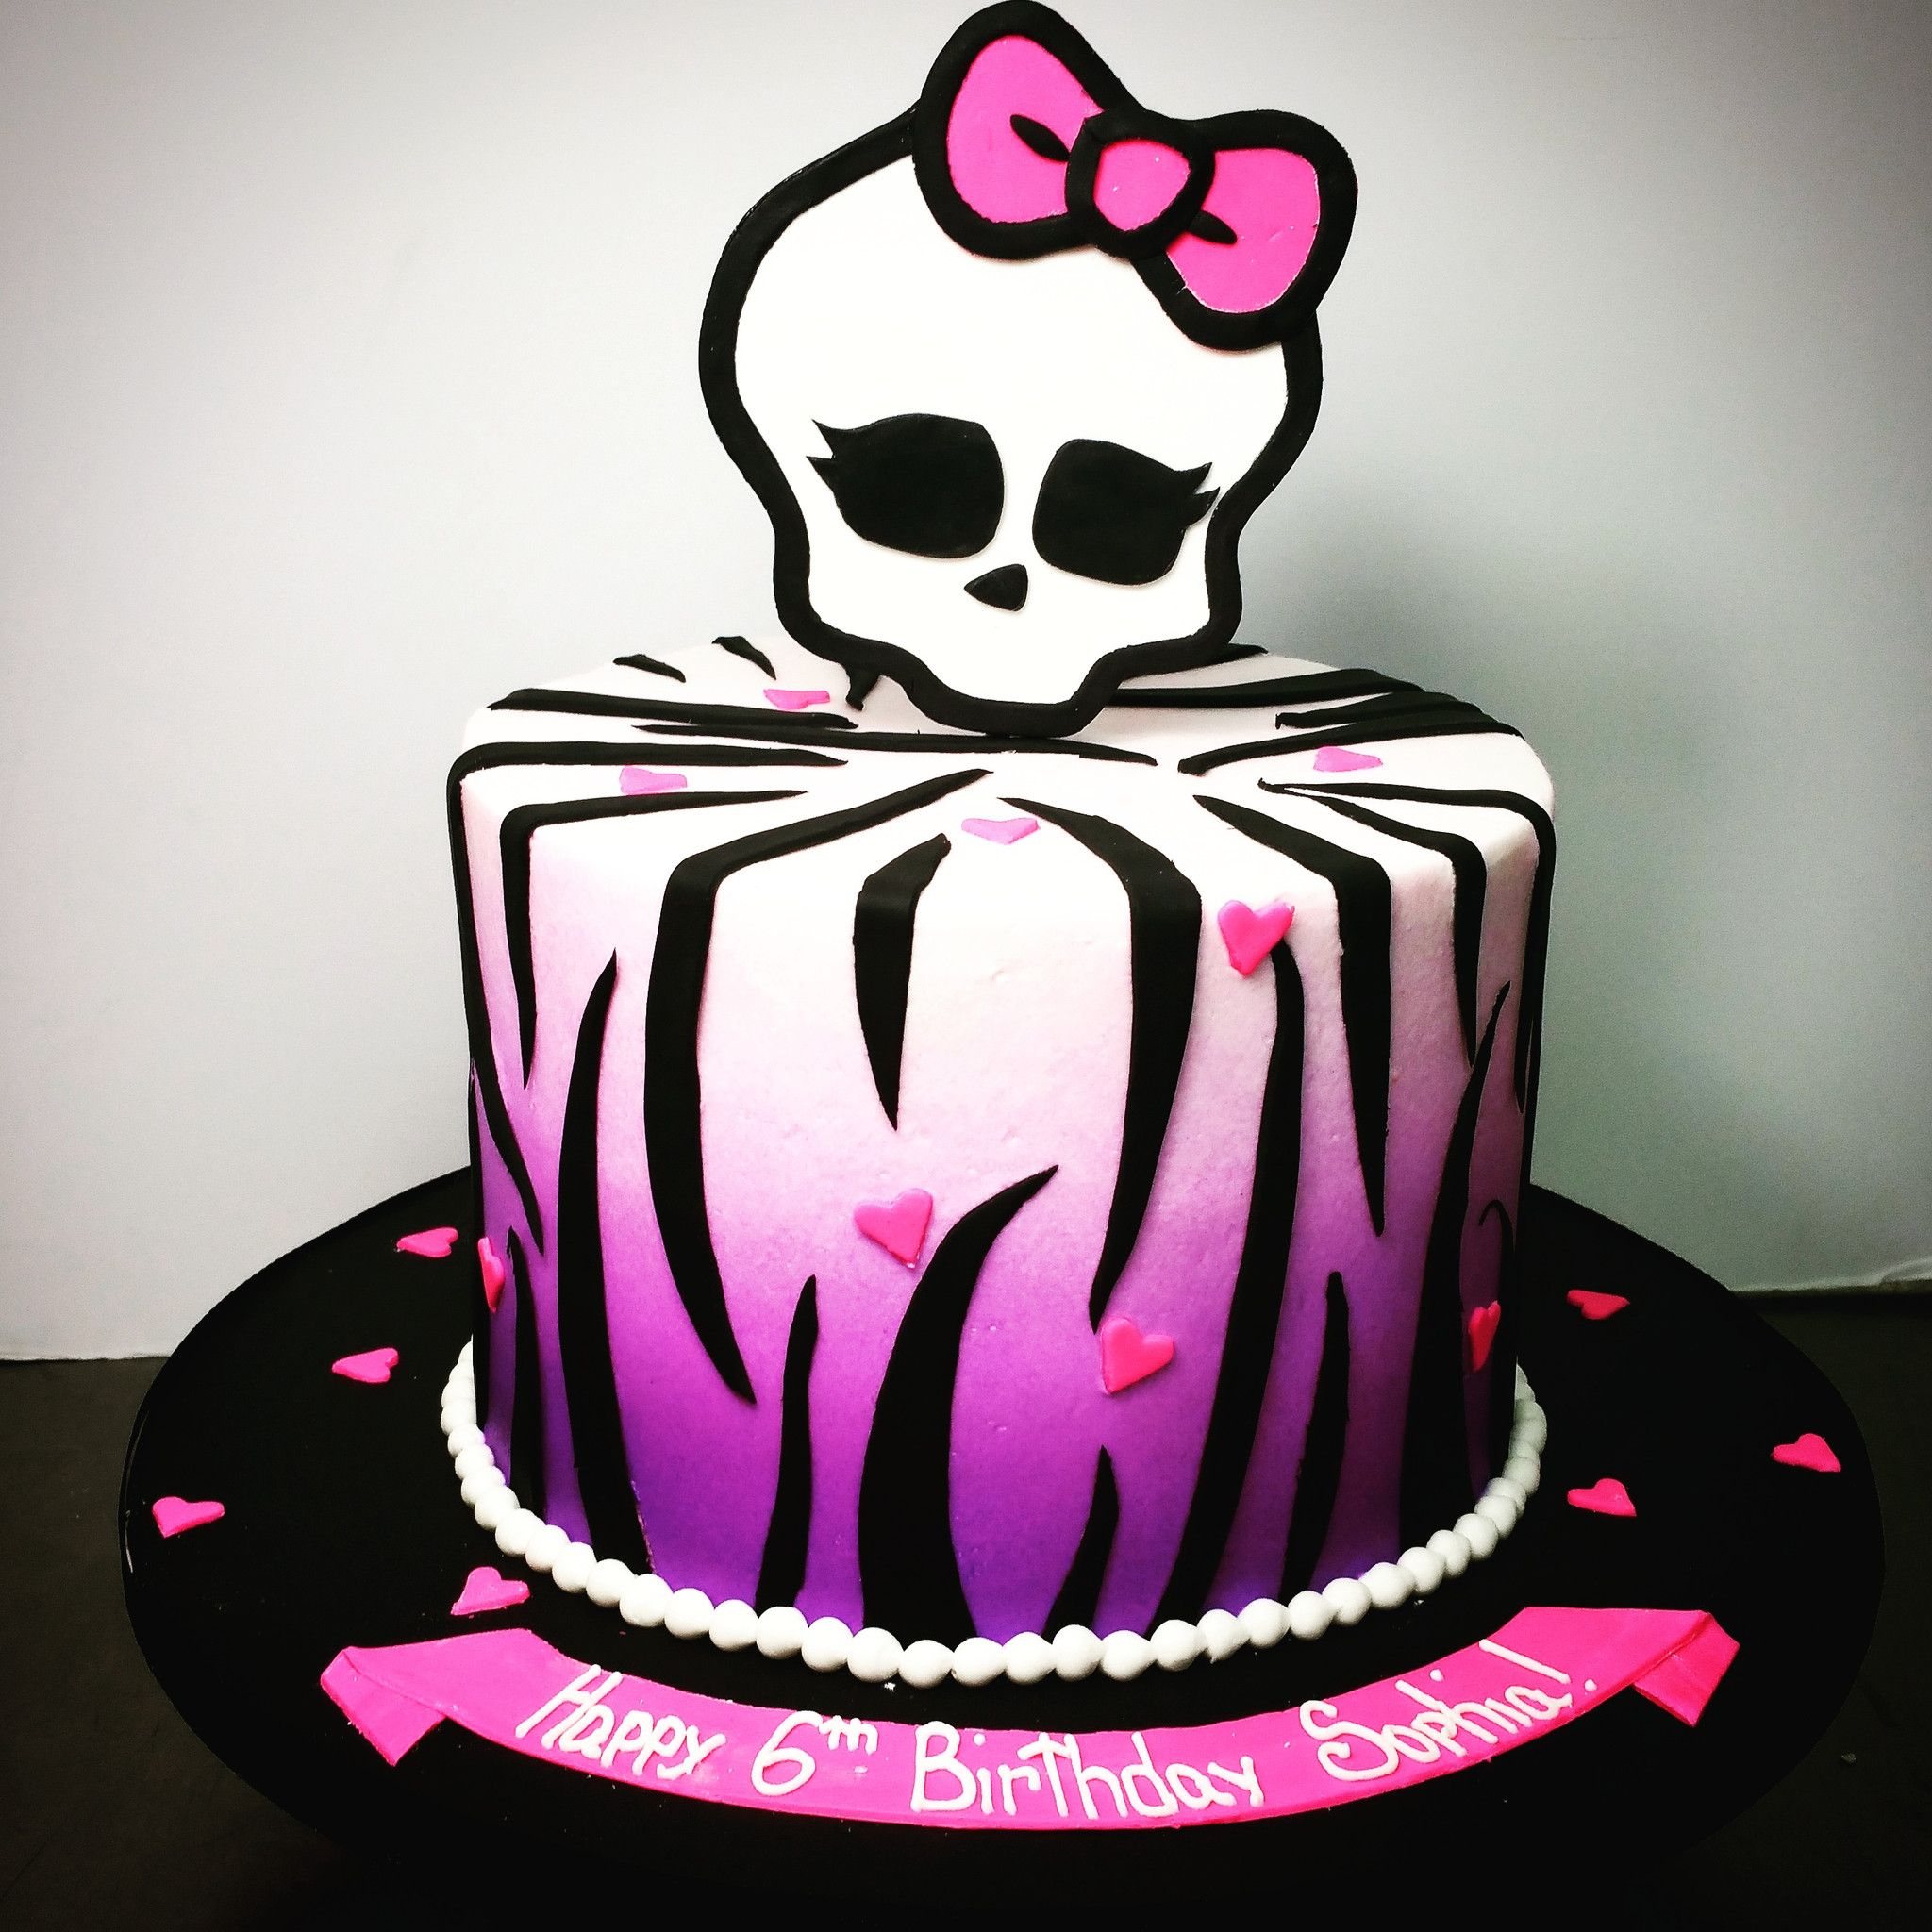 Monster High Birthday Cakes Buttercream Monster High Birthday Cake In 2018 Monster High